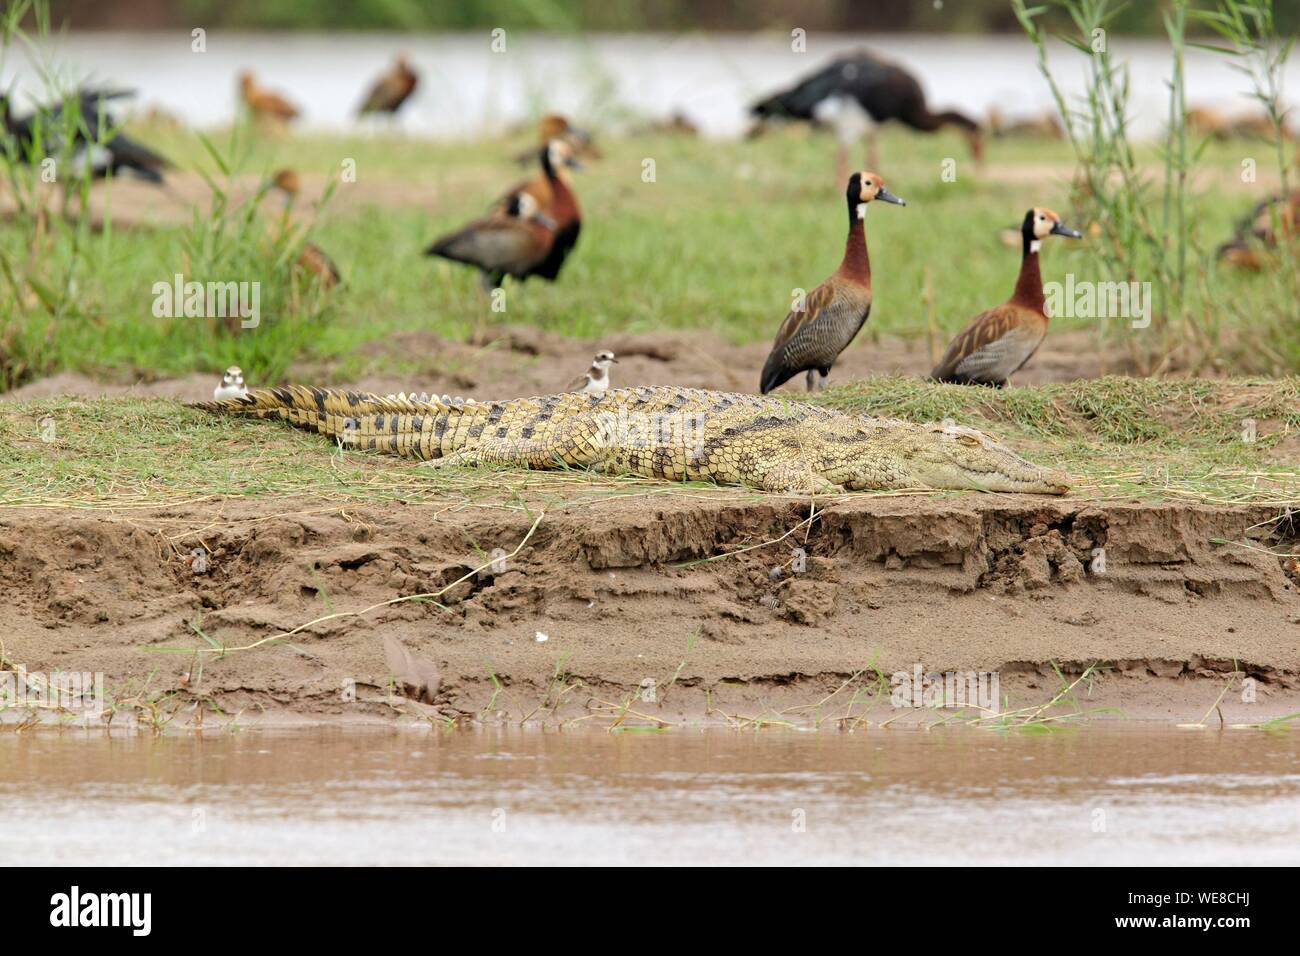 Burundi, Rusizi National Park, coccodrillo del Nilo (Crocodylus niloticus), di fronte bianco-sibili anatra (Dendrocygna viduata) Foto Stock